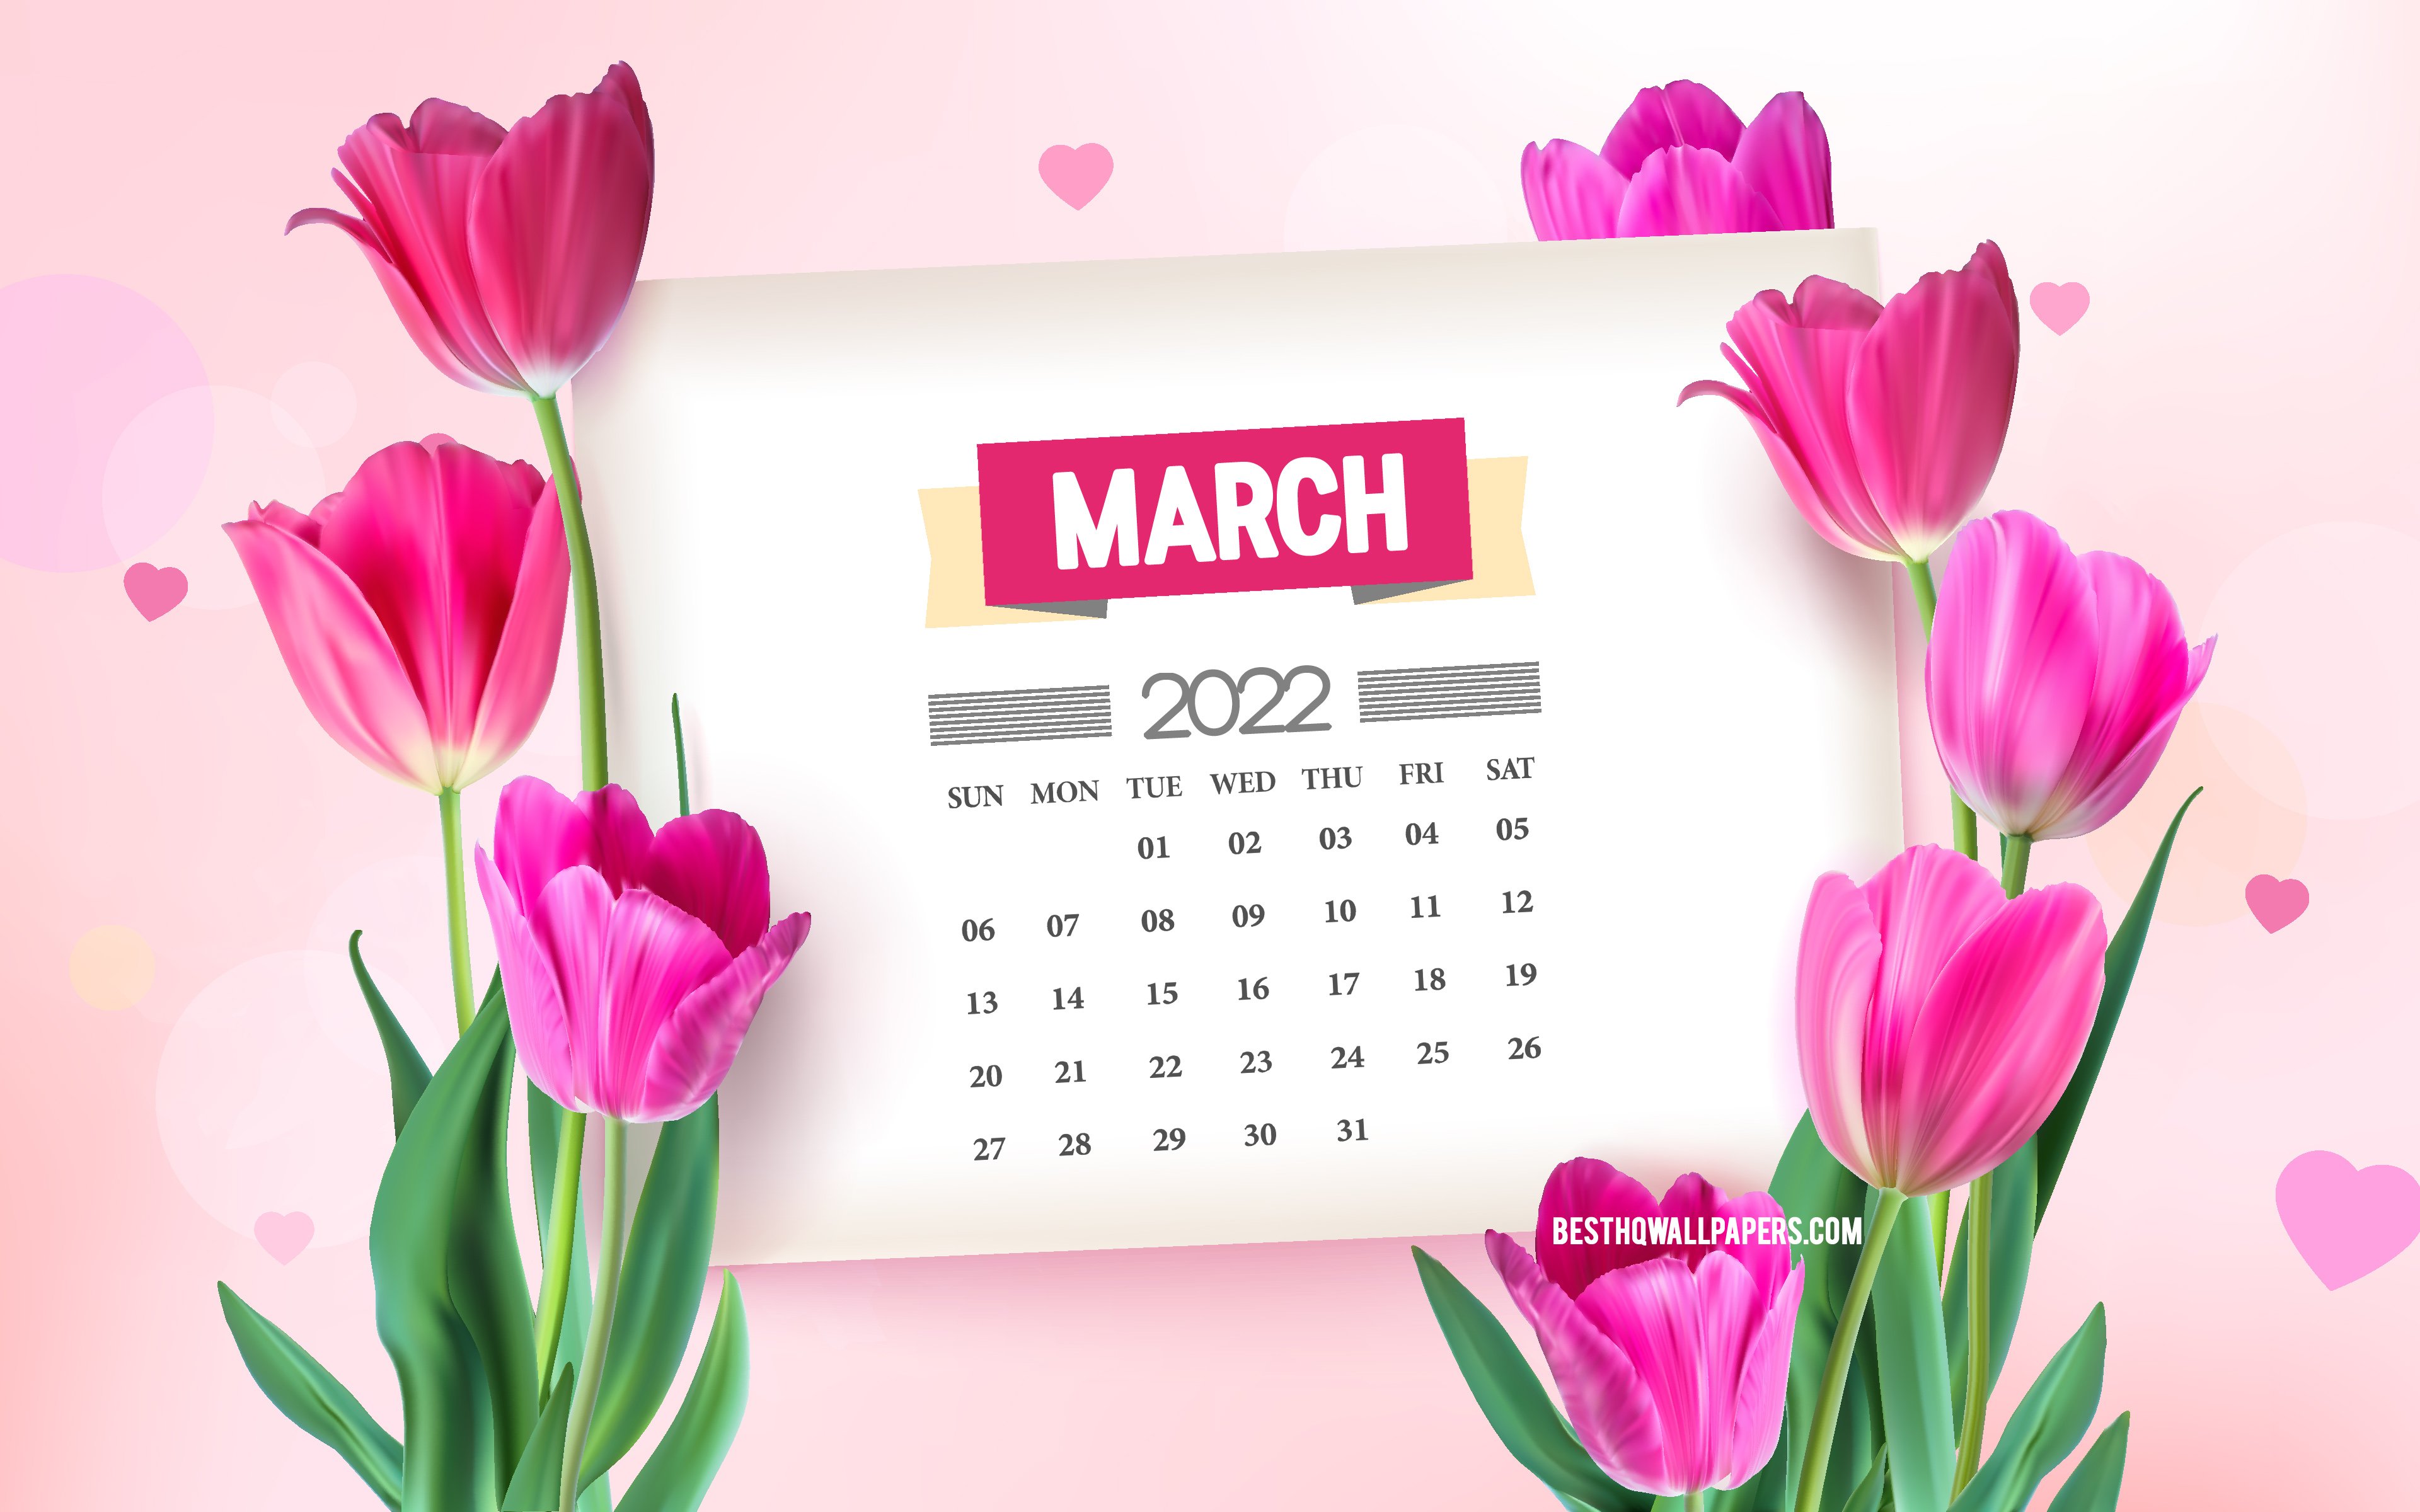 march 2022 calendar wallpaper hd